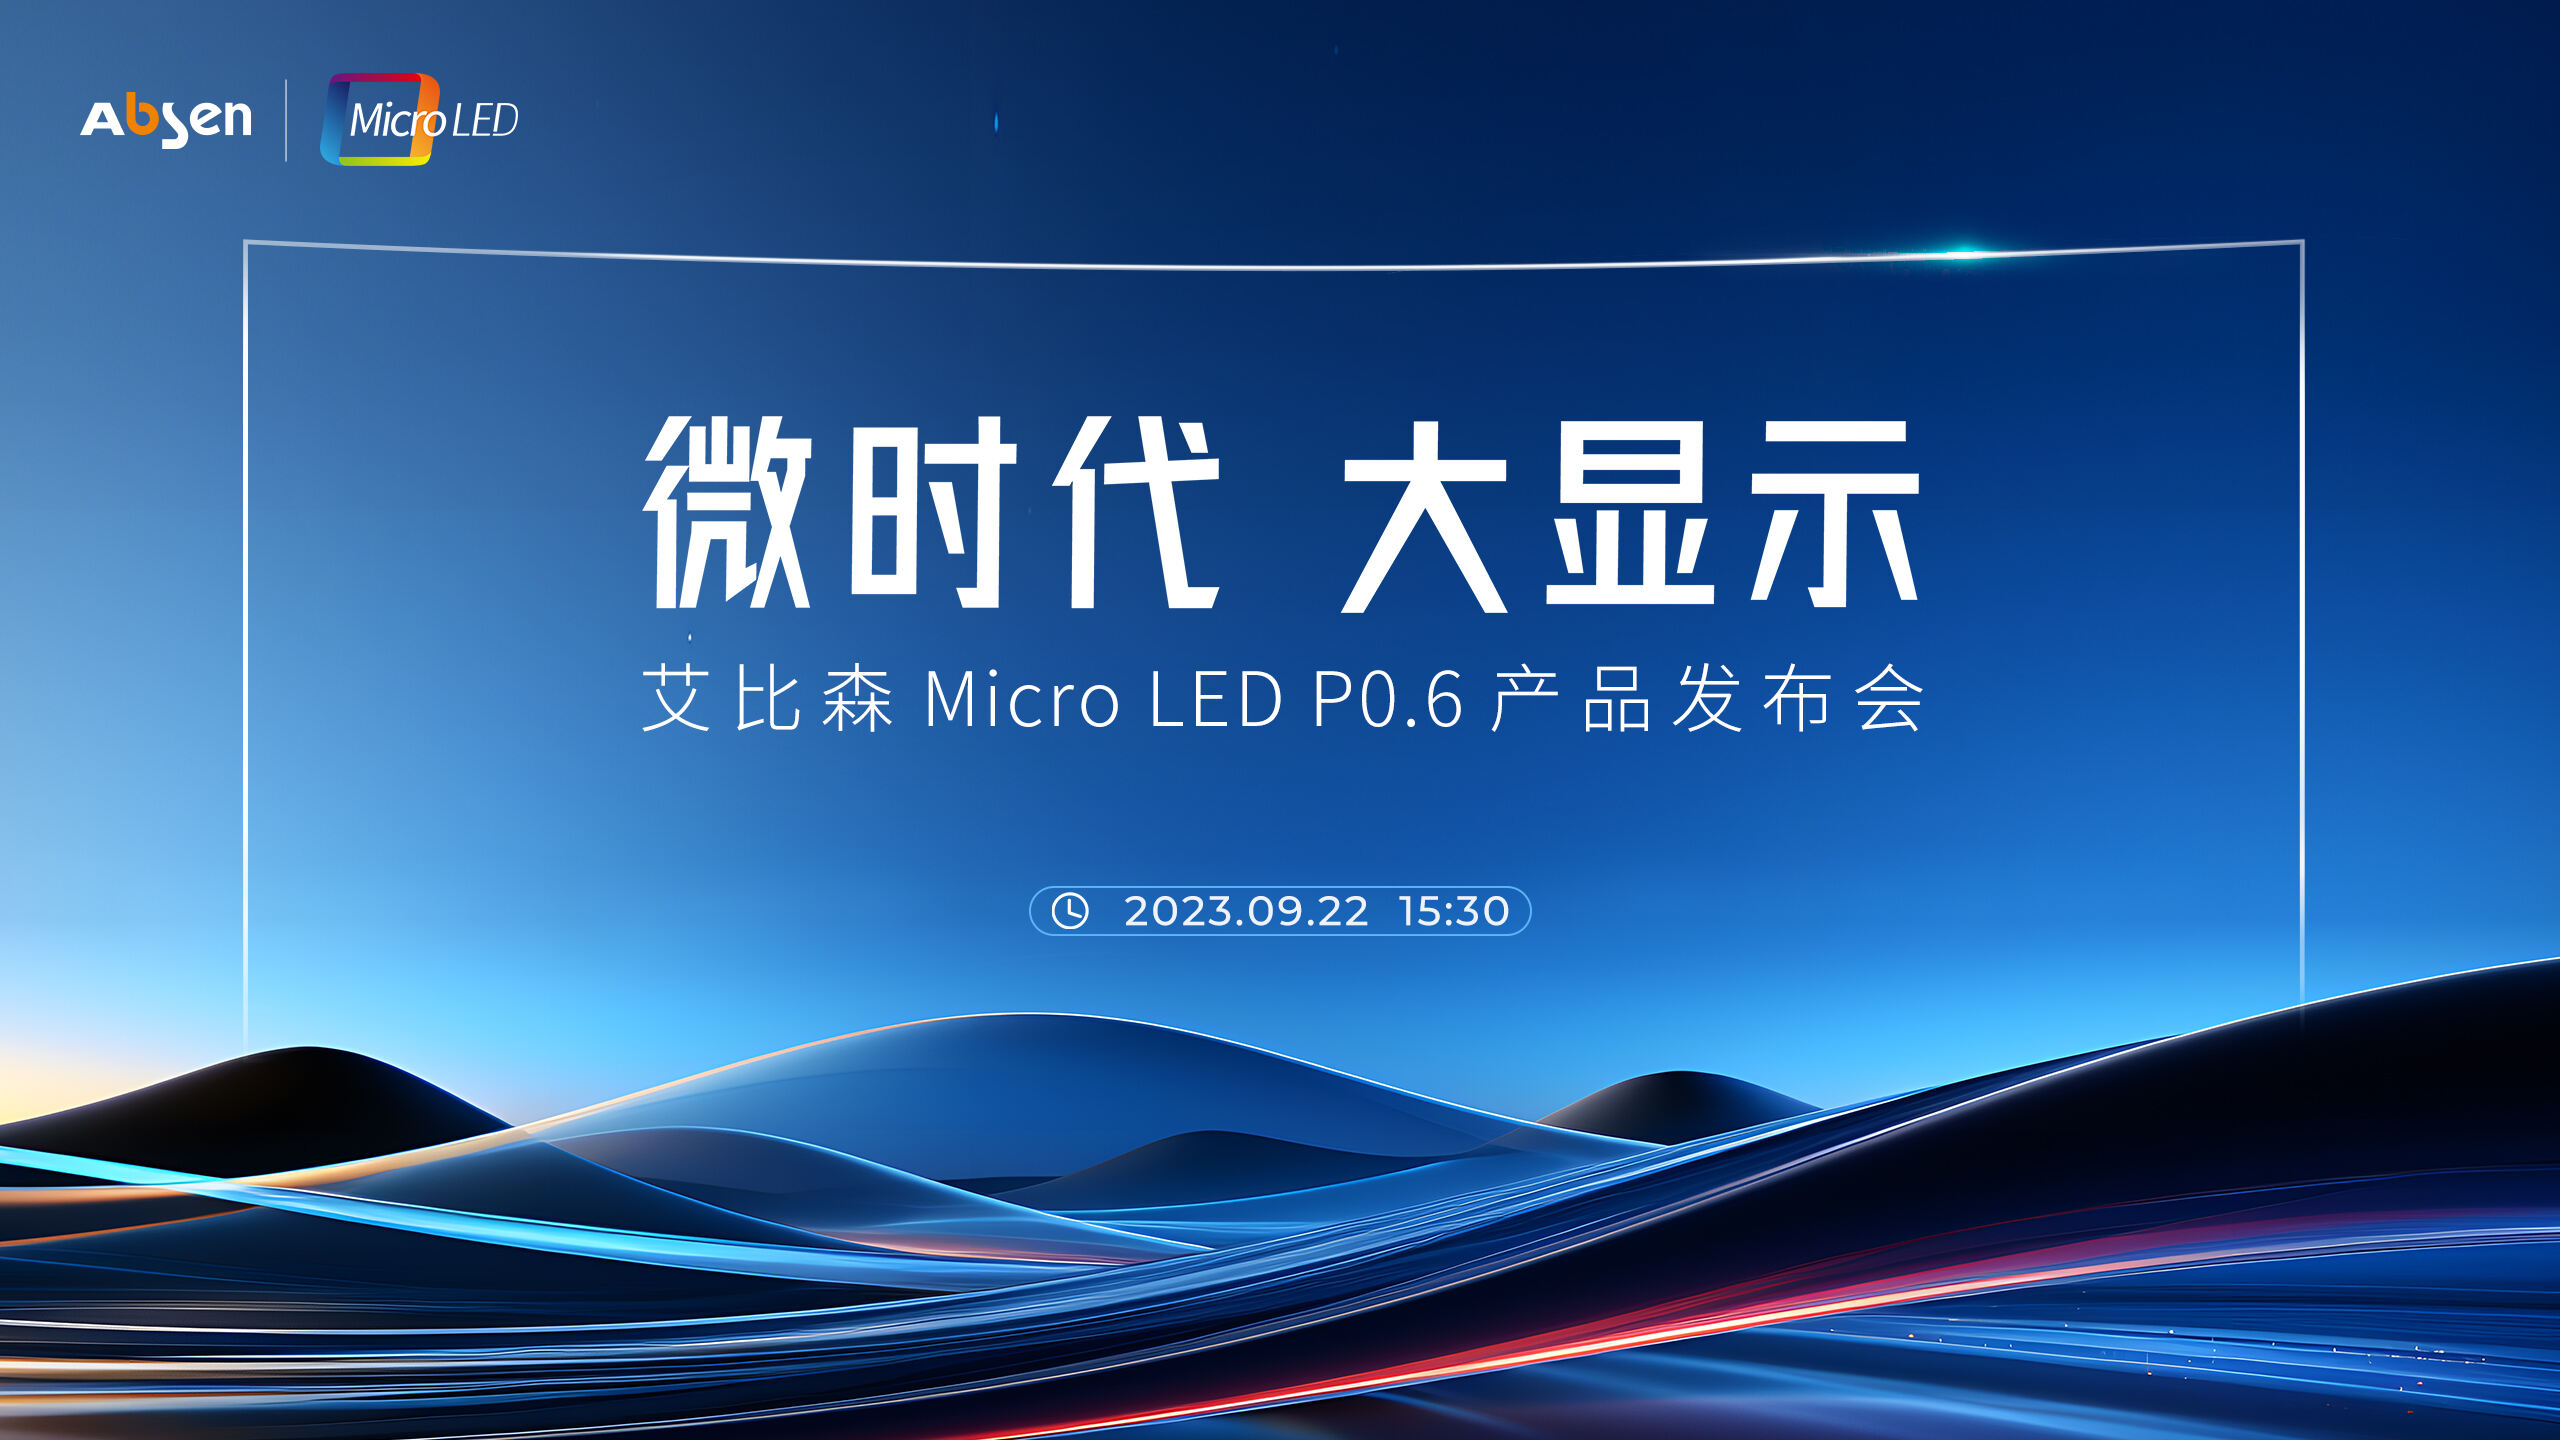 微时代 大显示丨55世纪
 Micro LED P0.6 产品重磅发布